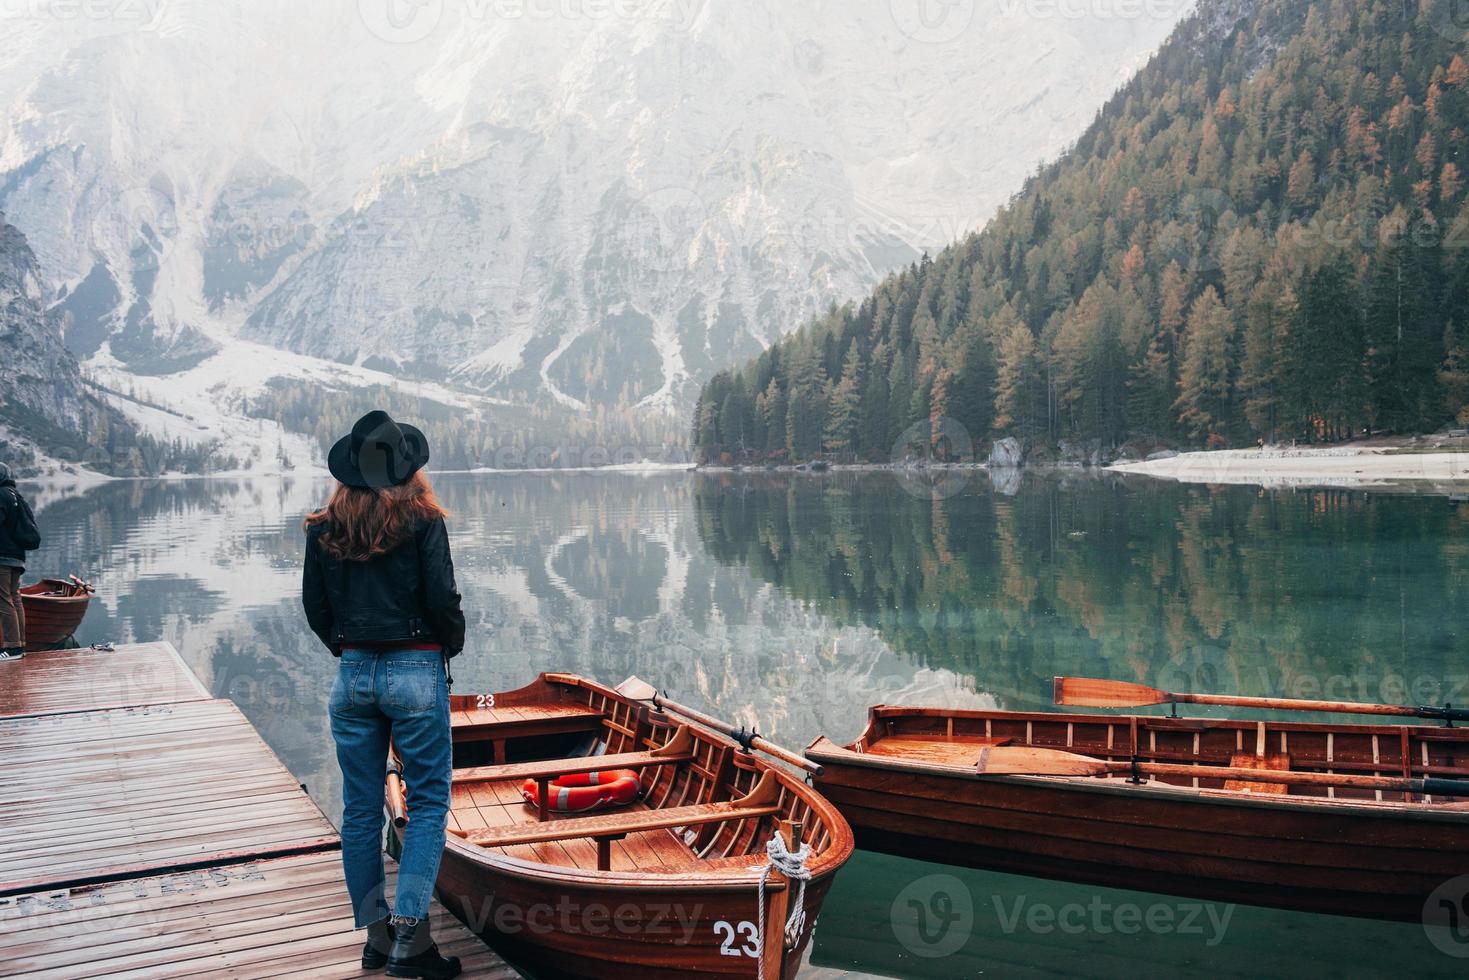 turistisk uppfattning. kvinna i svart hatt njuter av majestätiska bergslandskap nära sjön med båtar foto